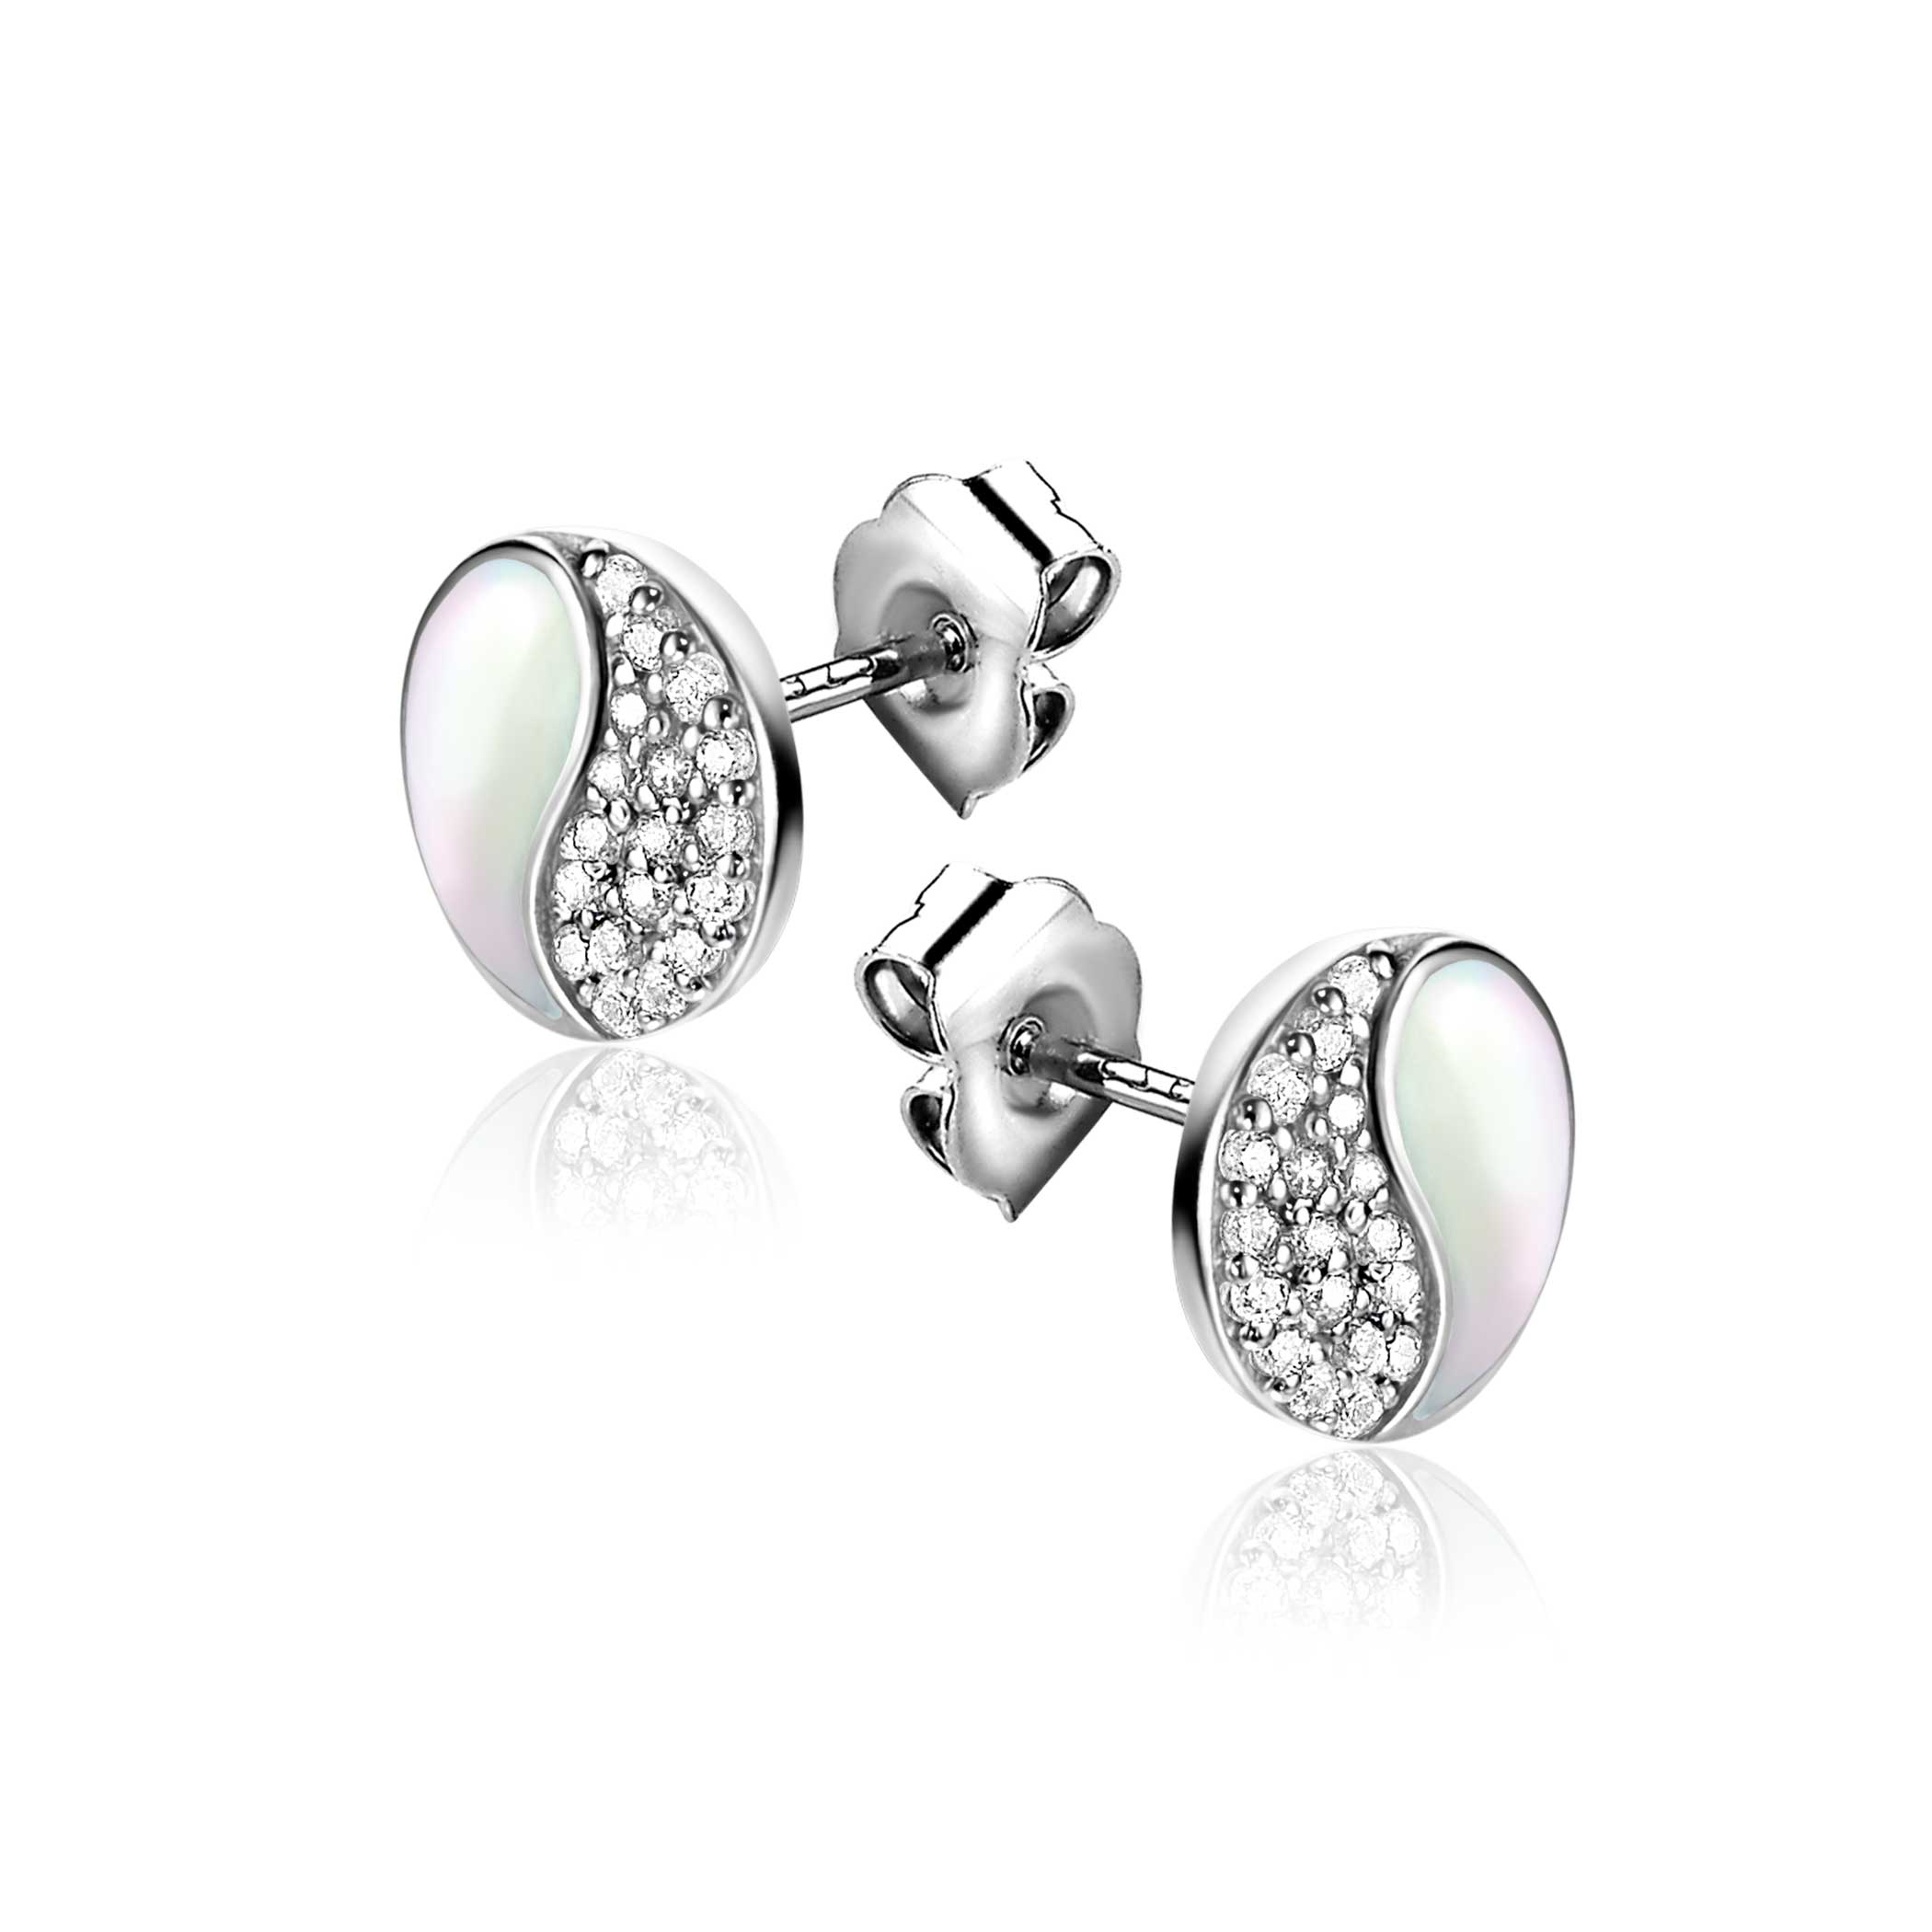 9mm ZINZI zilveren Yin Yang oorstekers, bezet met parelmoer en witte zirconia's. Yin Yang staat symbool voor: balans, harmonie, dynamiek en verbondenheid ZIO2423